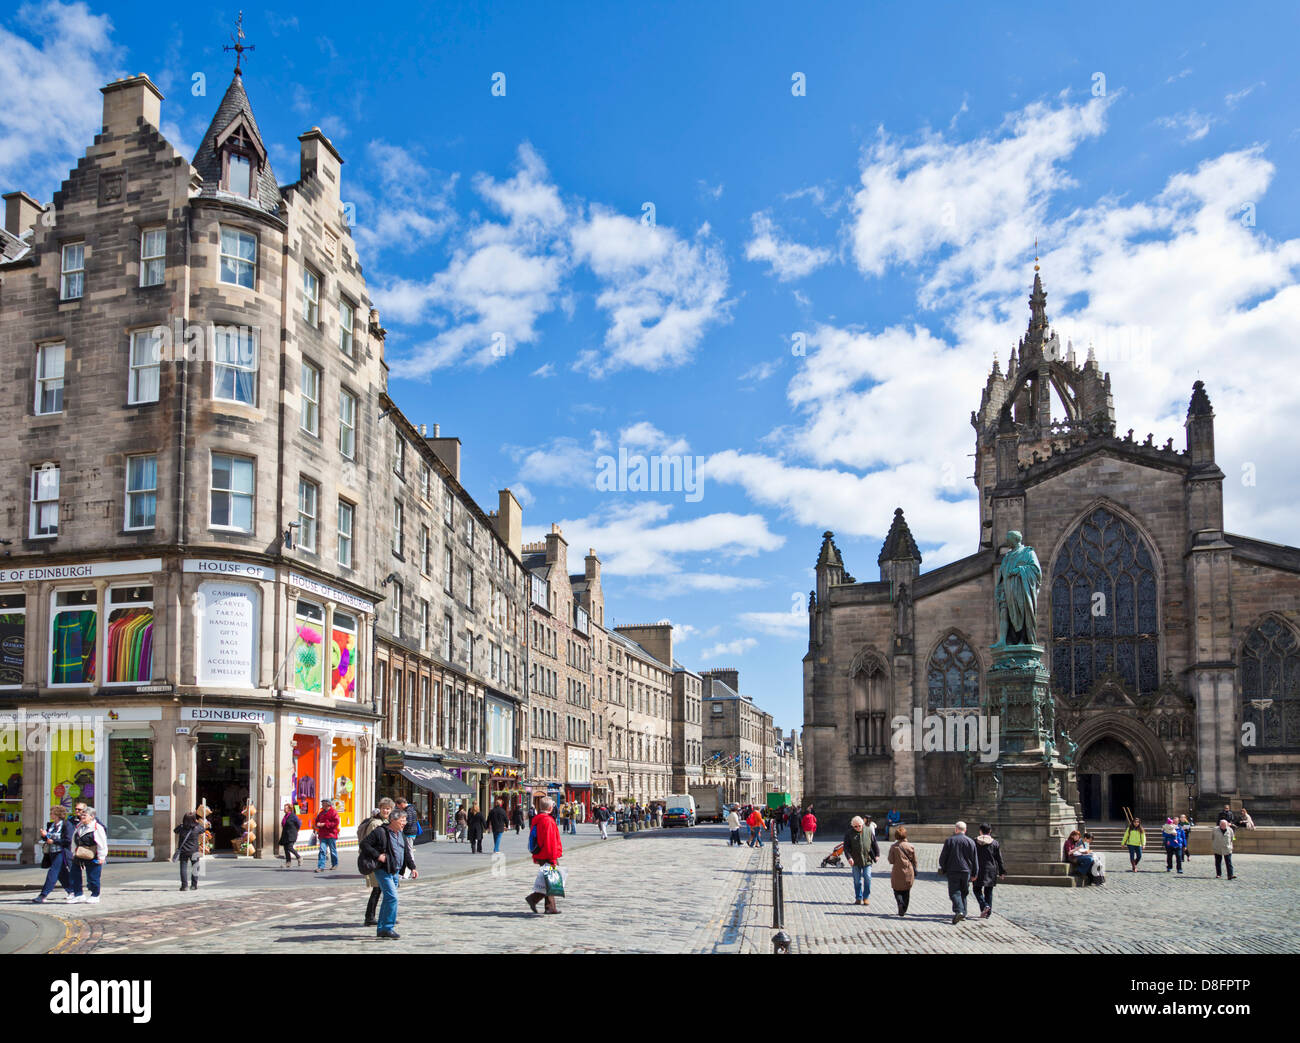 La cathédrale St Giles High Street Edinburgh Royal Mile Midlothian Scotland UK GB EU Europe Banque D'Images